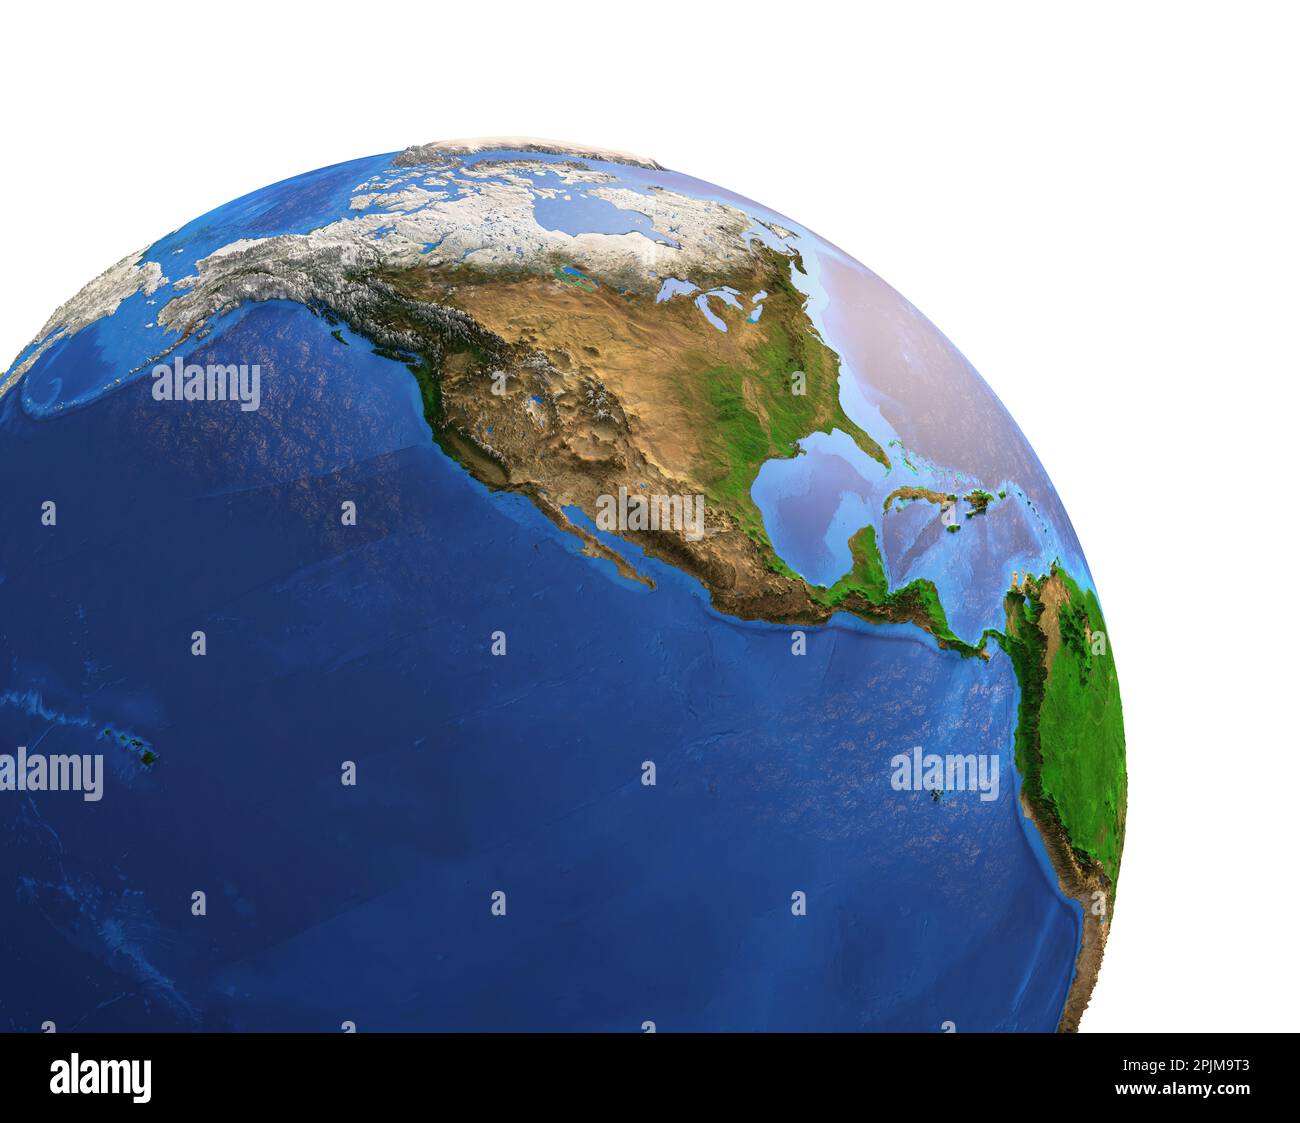 Vista satellitare ad alta risoluzione del pianeta Terra, focalizzata su Nord America, Alaska, Canada, Stati Uniti e Messico - elementi forniti dalla NASA Foto Stock